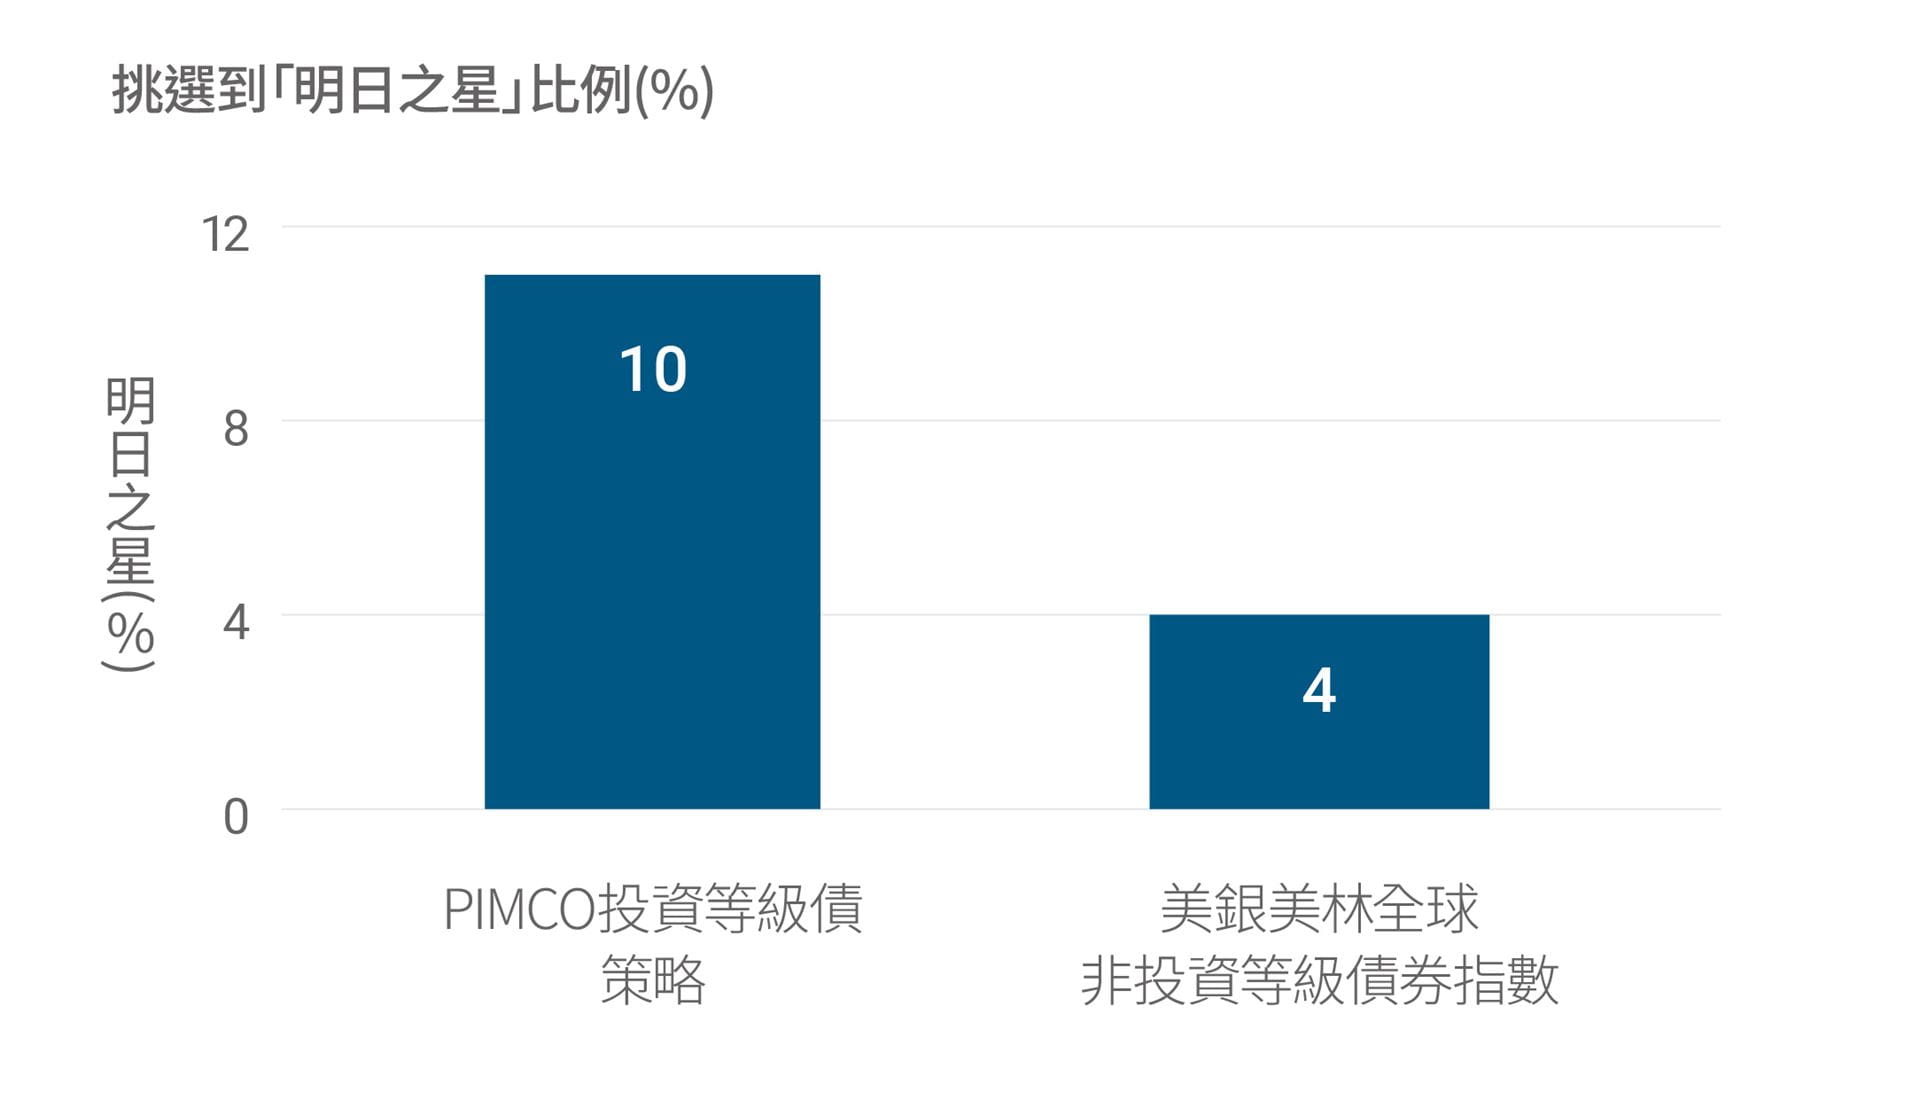 PIMCO投資等級債券策略挑選到「明日之星」的比例為10%；美銀美林全球非投資等級債券指數挑選到「明日之星」的比例為4%。